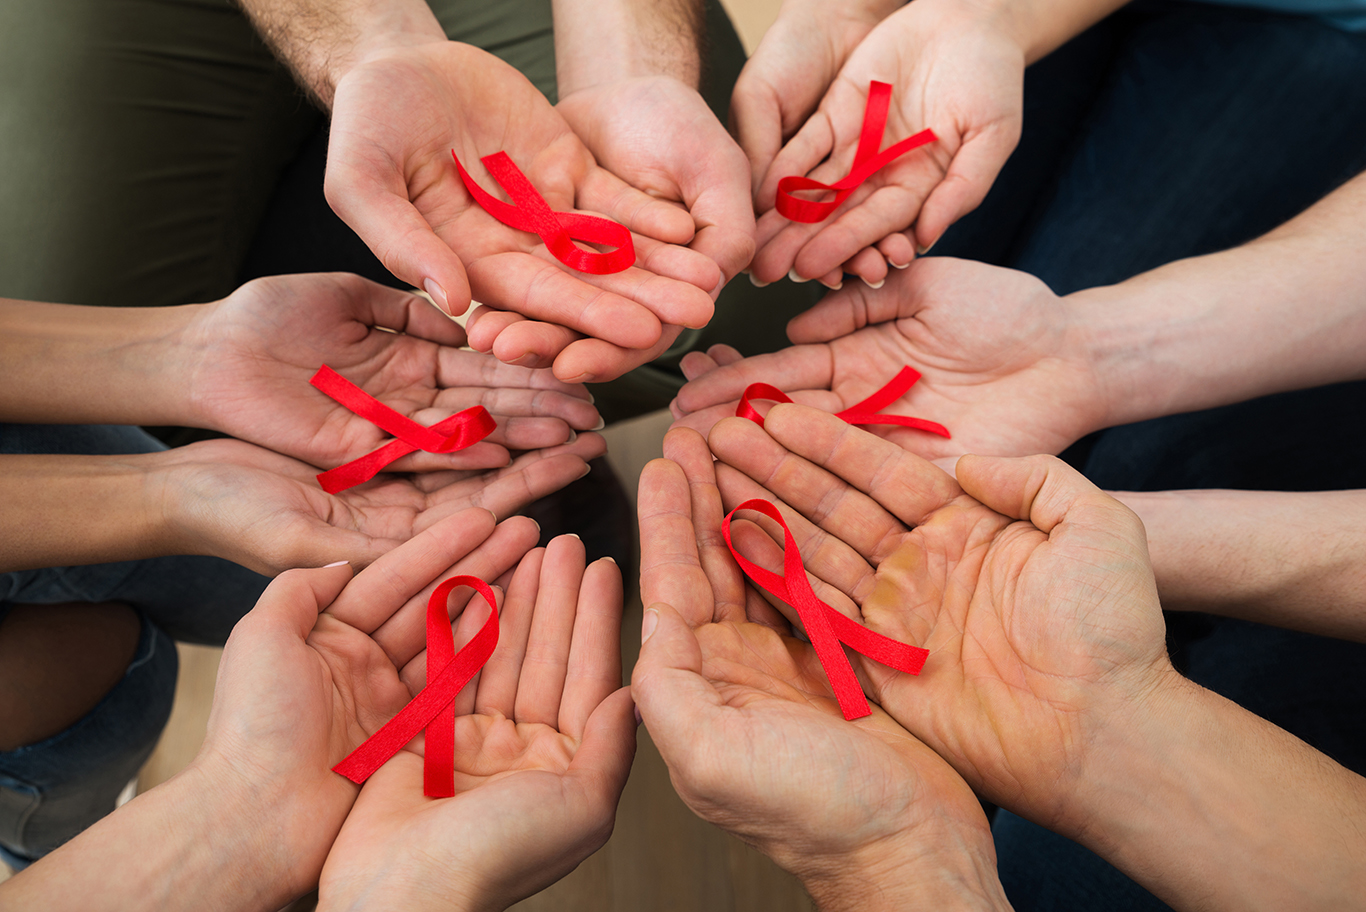 VIH/sida : Pierre Delobel fait le point sur l’épidémie